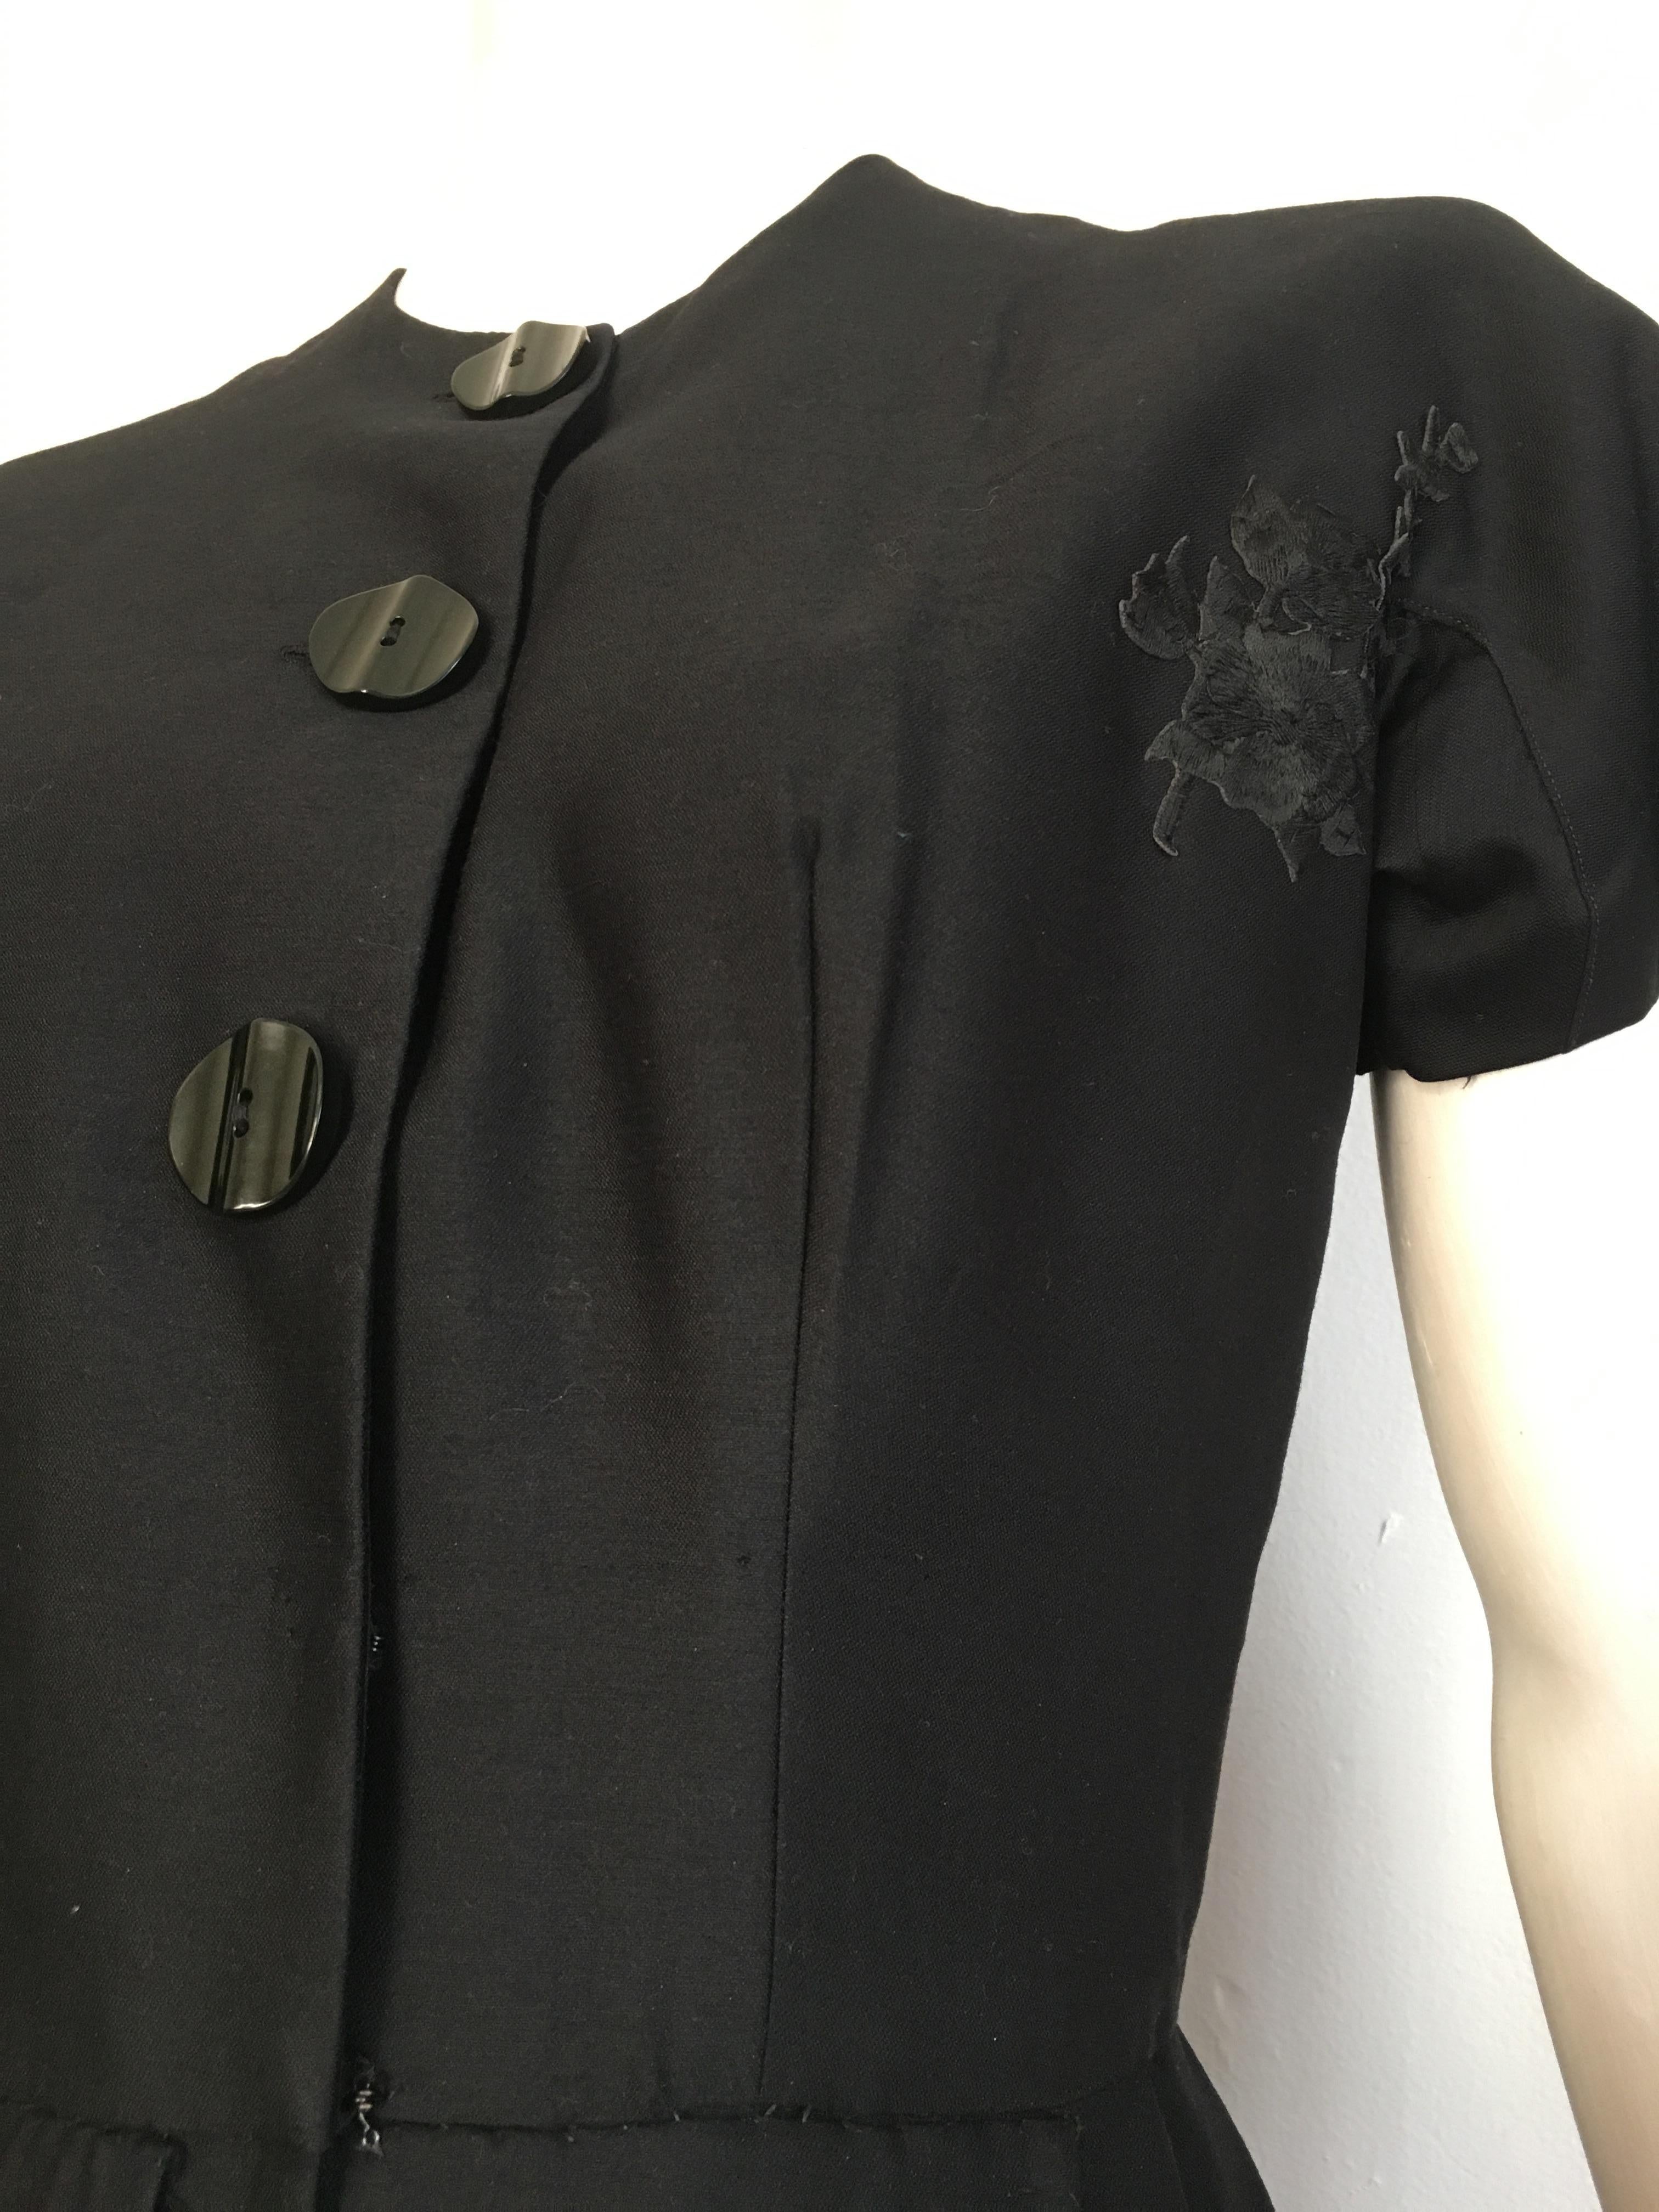 Suzy Perette 1950s Little Black Dress Size 4. For Sale 3